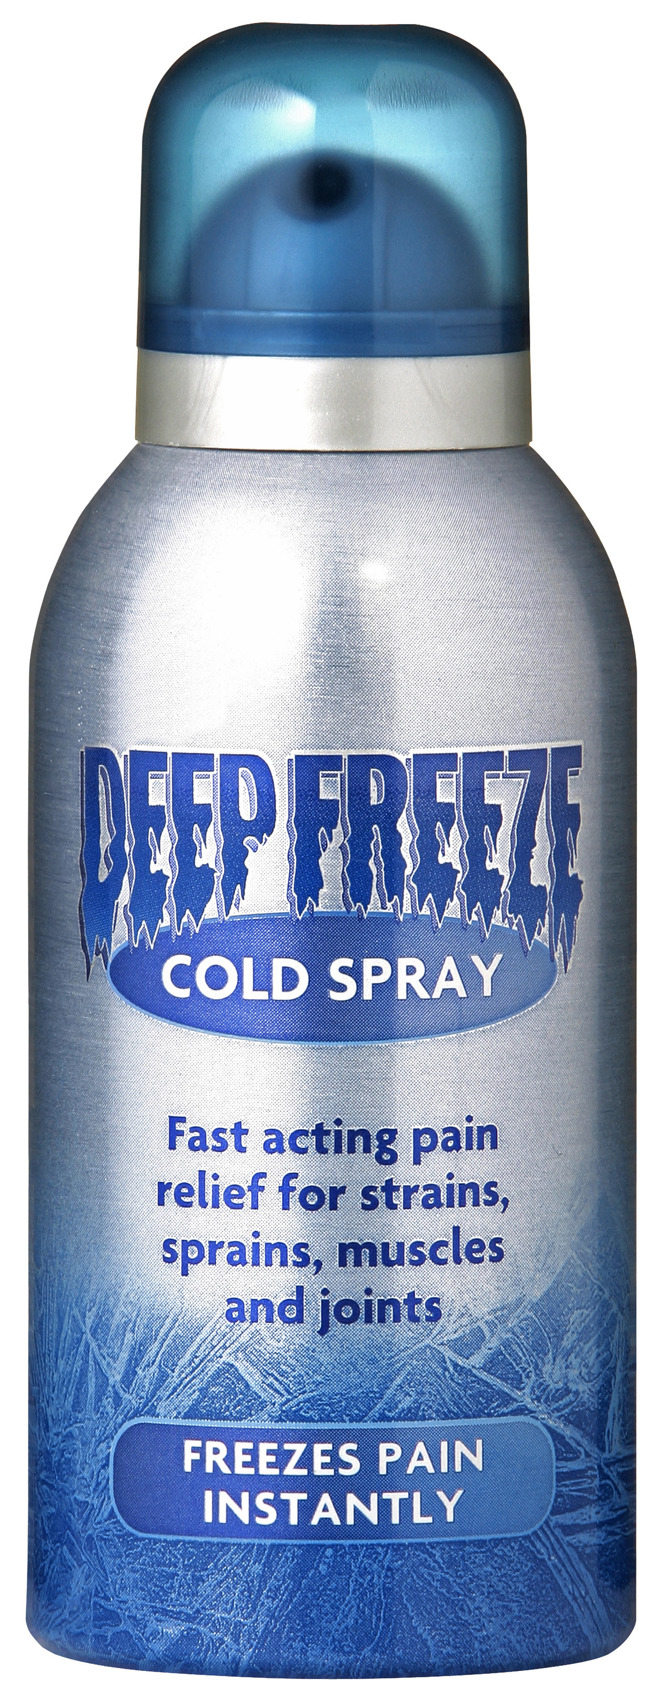 Mentholatum deep freeze spray